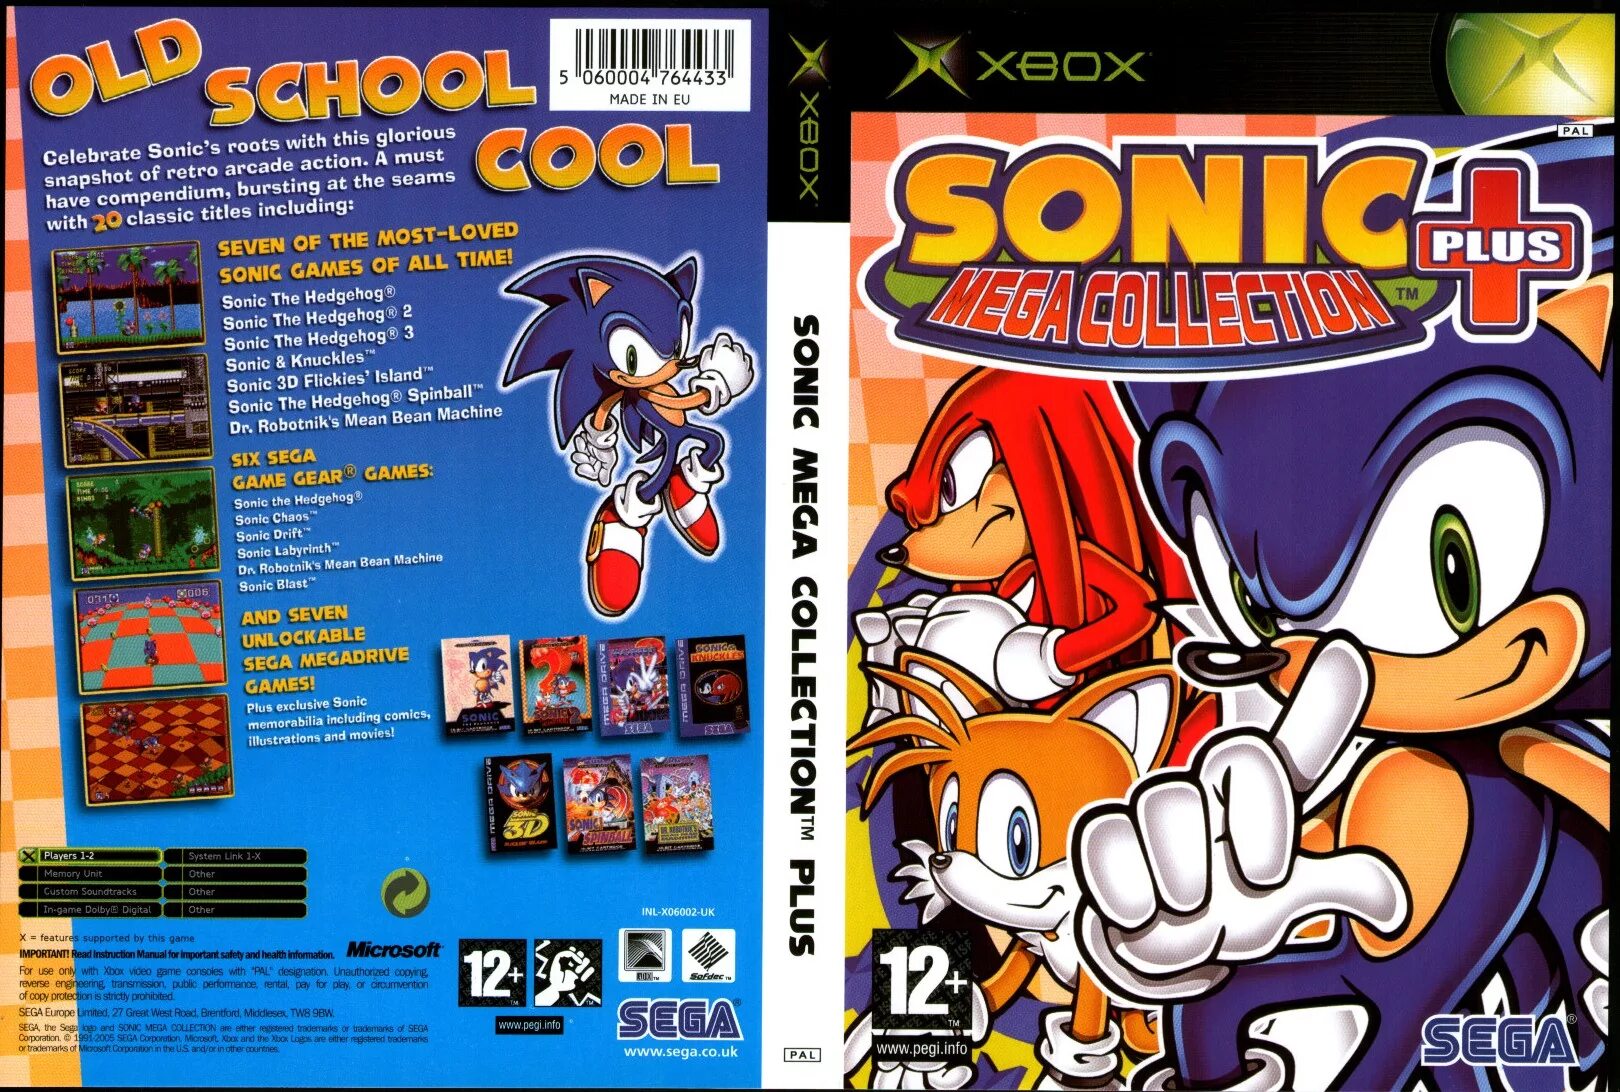 Sonic на сеге. Sonic Mega collection Plus Xbox. Sonic Mega collection Plus Xbox 360. Sonic Mega collection GAMECUBE. Sonic Mega collection Plus Xbox Original.